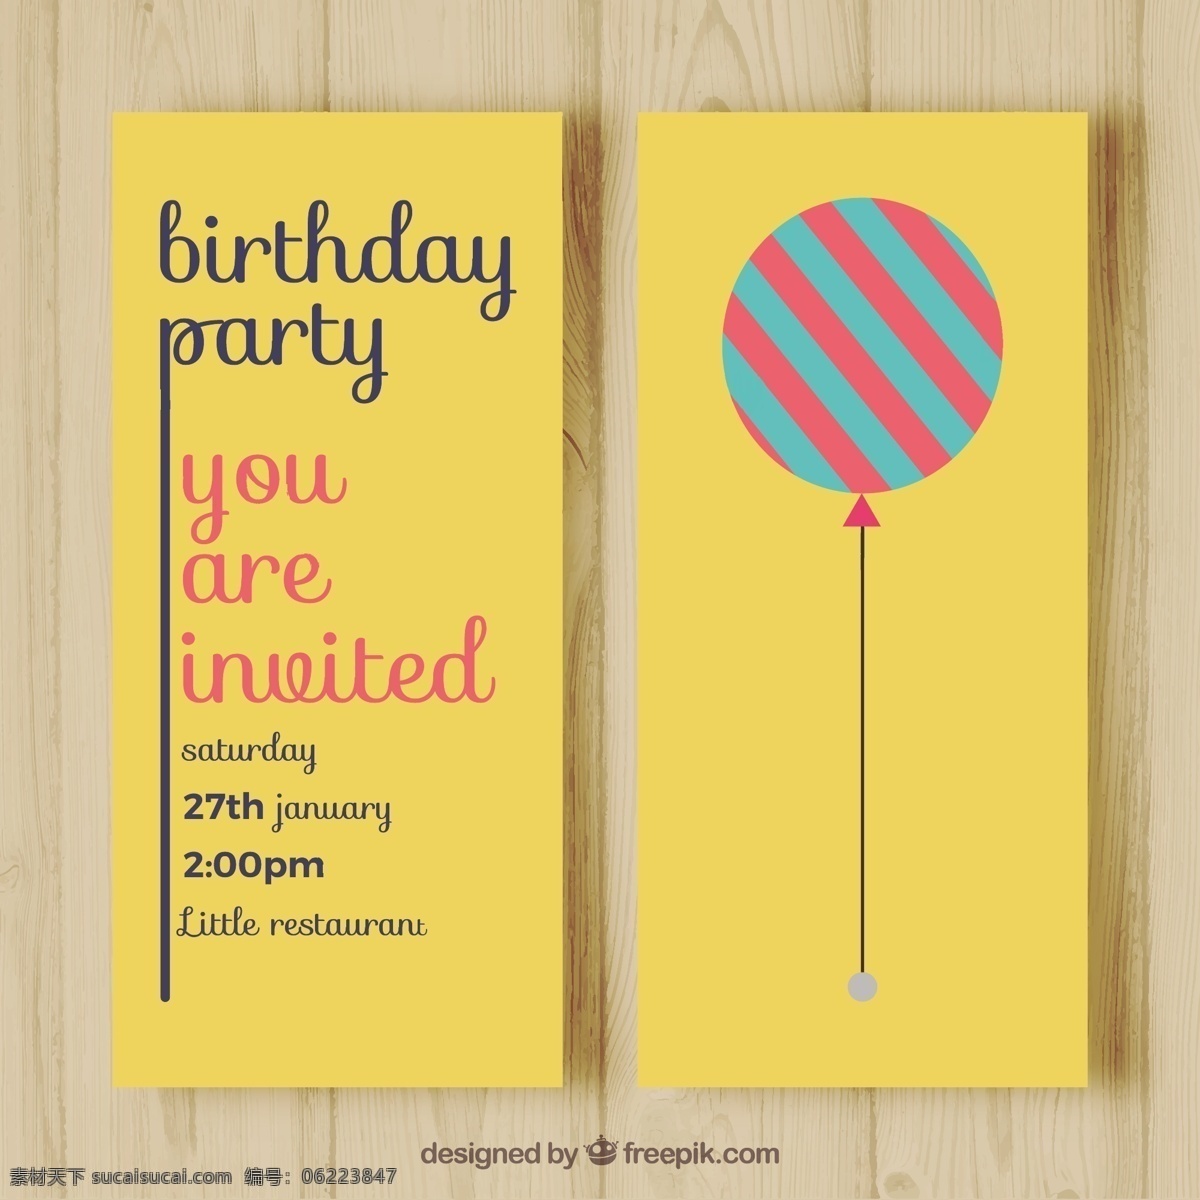 漂亮 条纹 气球 生日卡 旧货 生日 邀请 聚会 卡片 复古 可爱 快乐 庆祝 平面设计